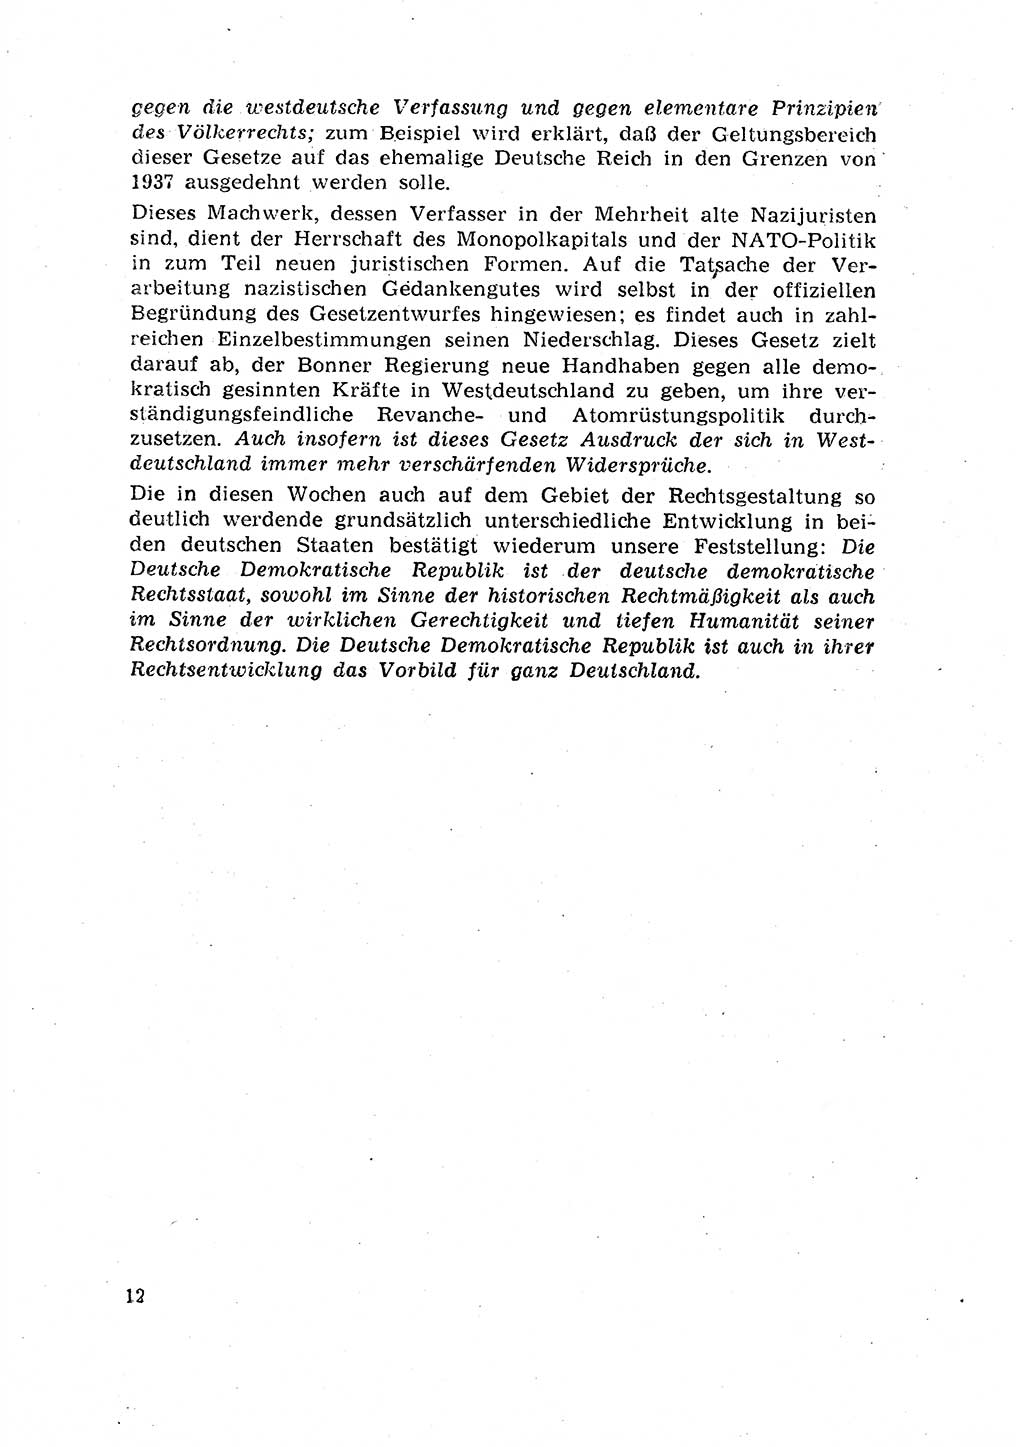 Rechtspflegeerlaß [Deutsche Demokratische Republik (DDR)] 1963, Seite 12 (R.-Pfl.-Erl. DDR 1963, S. 12)